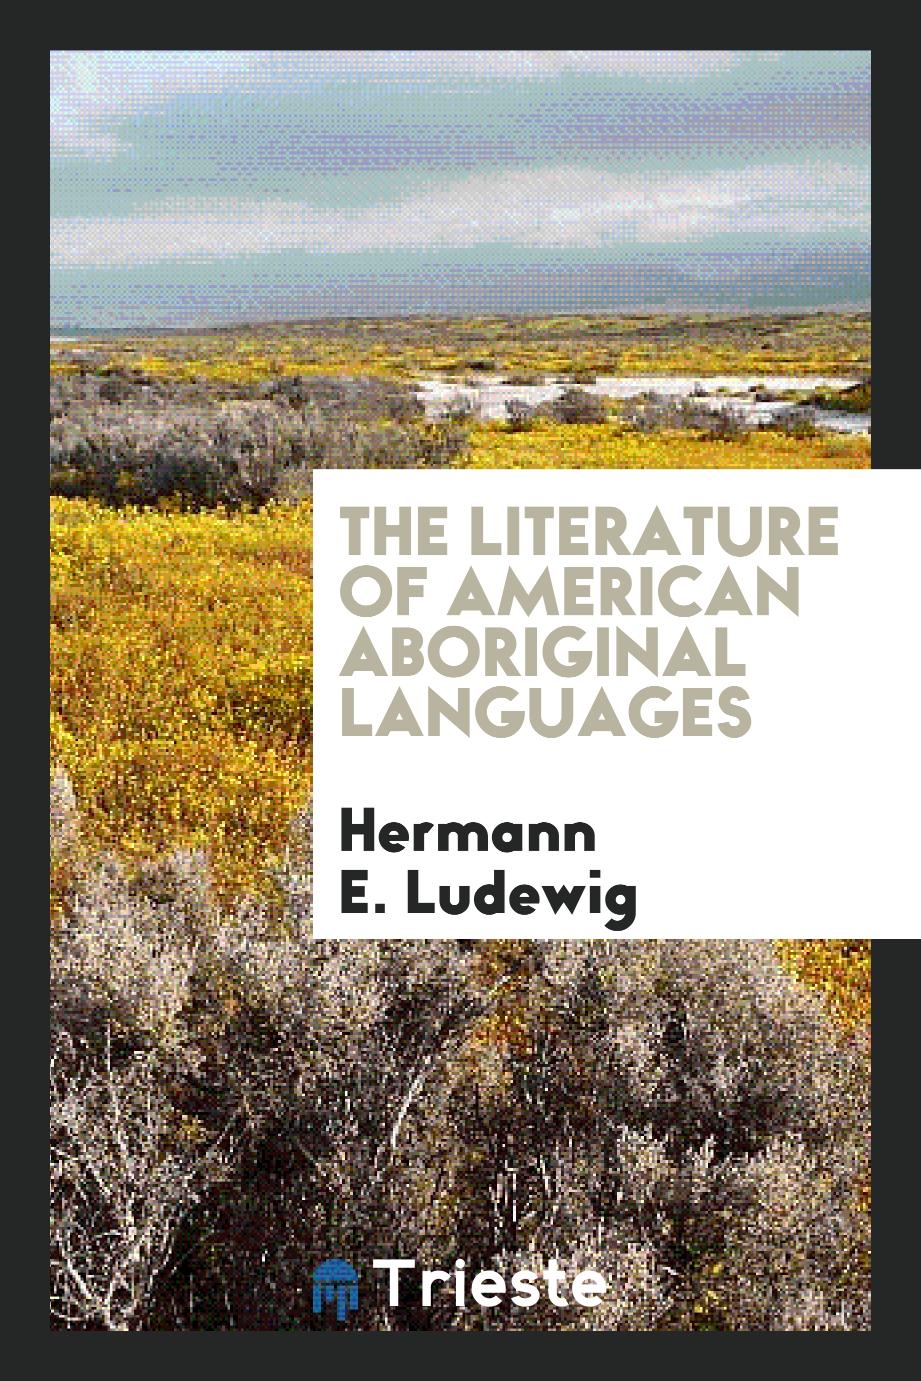 The literature of American aboriginal languages